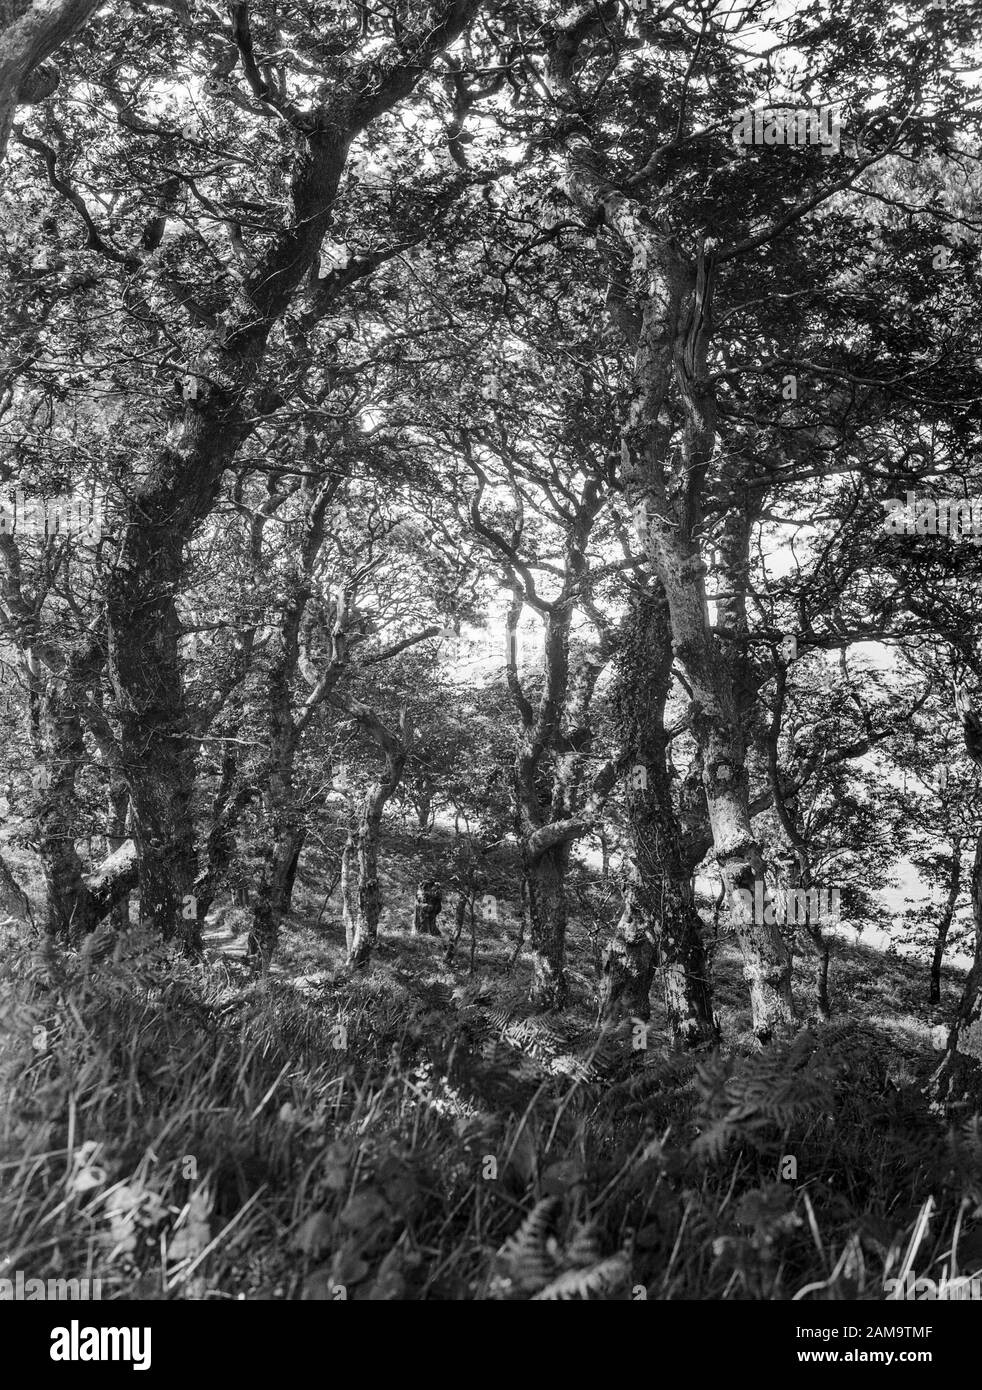 Archivio immagine circa 1920 di gallfanteria Bower, Clovelly, Devon. Scansione dal negativo originale. Foto Stock